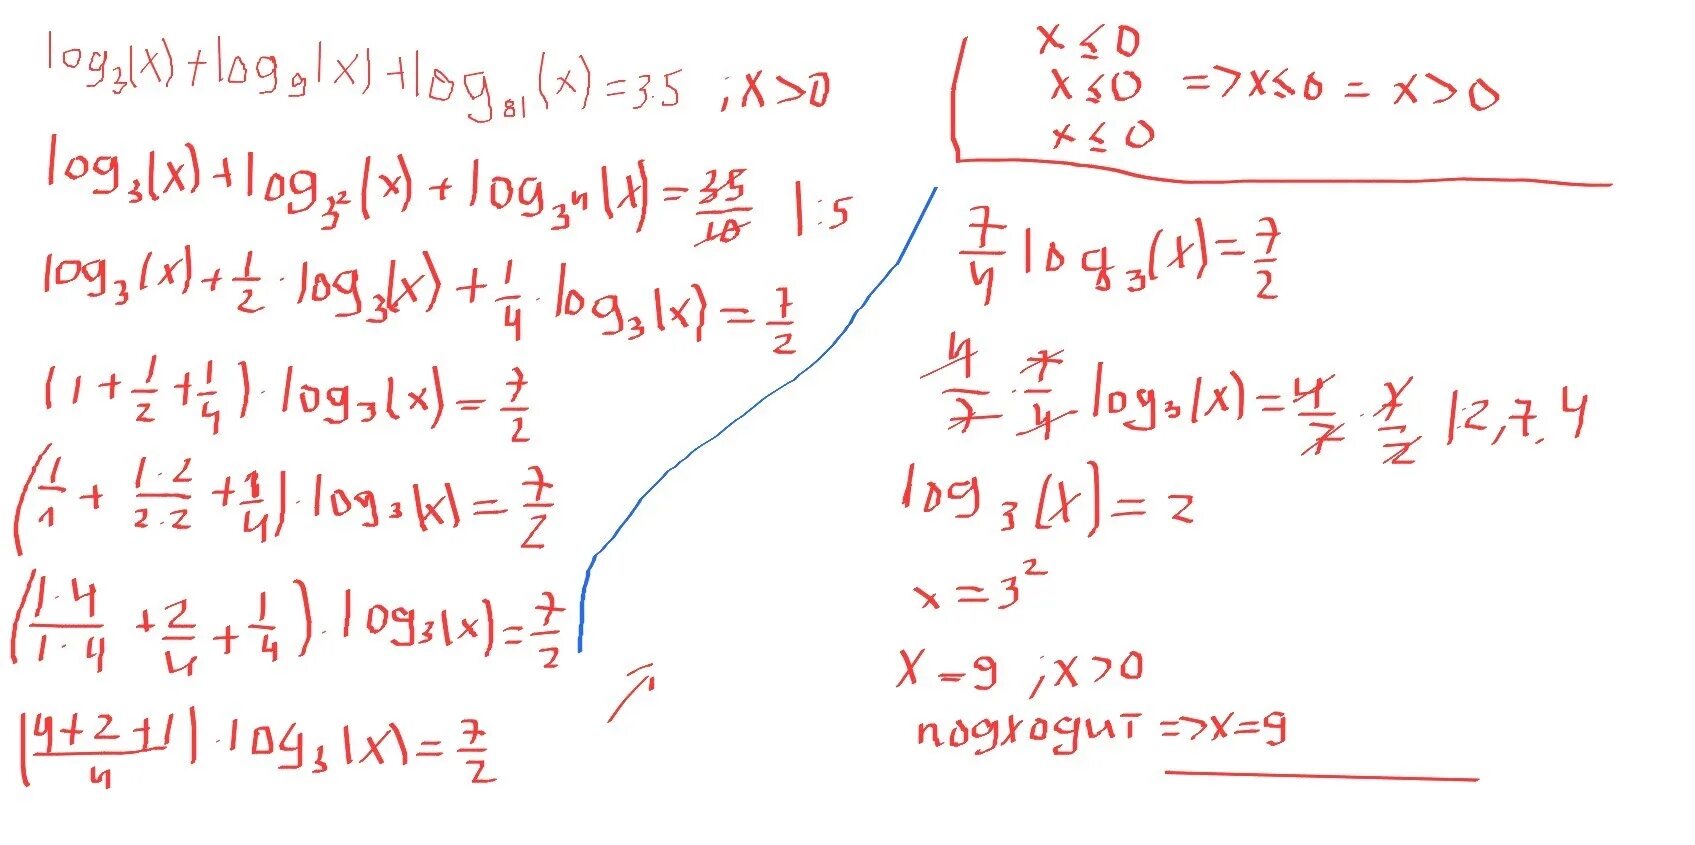 Logx/3(logx корень из 3-x). Log9 x 7 2 log81 x 3 4+log3 x 3 3x 7 3. Log 3 x-log9 x+ log81. X log3(3)=9. Log 2 3x 9